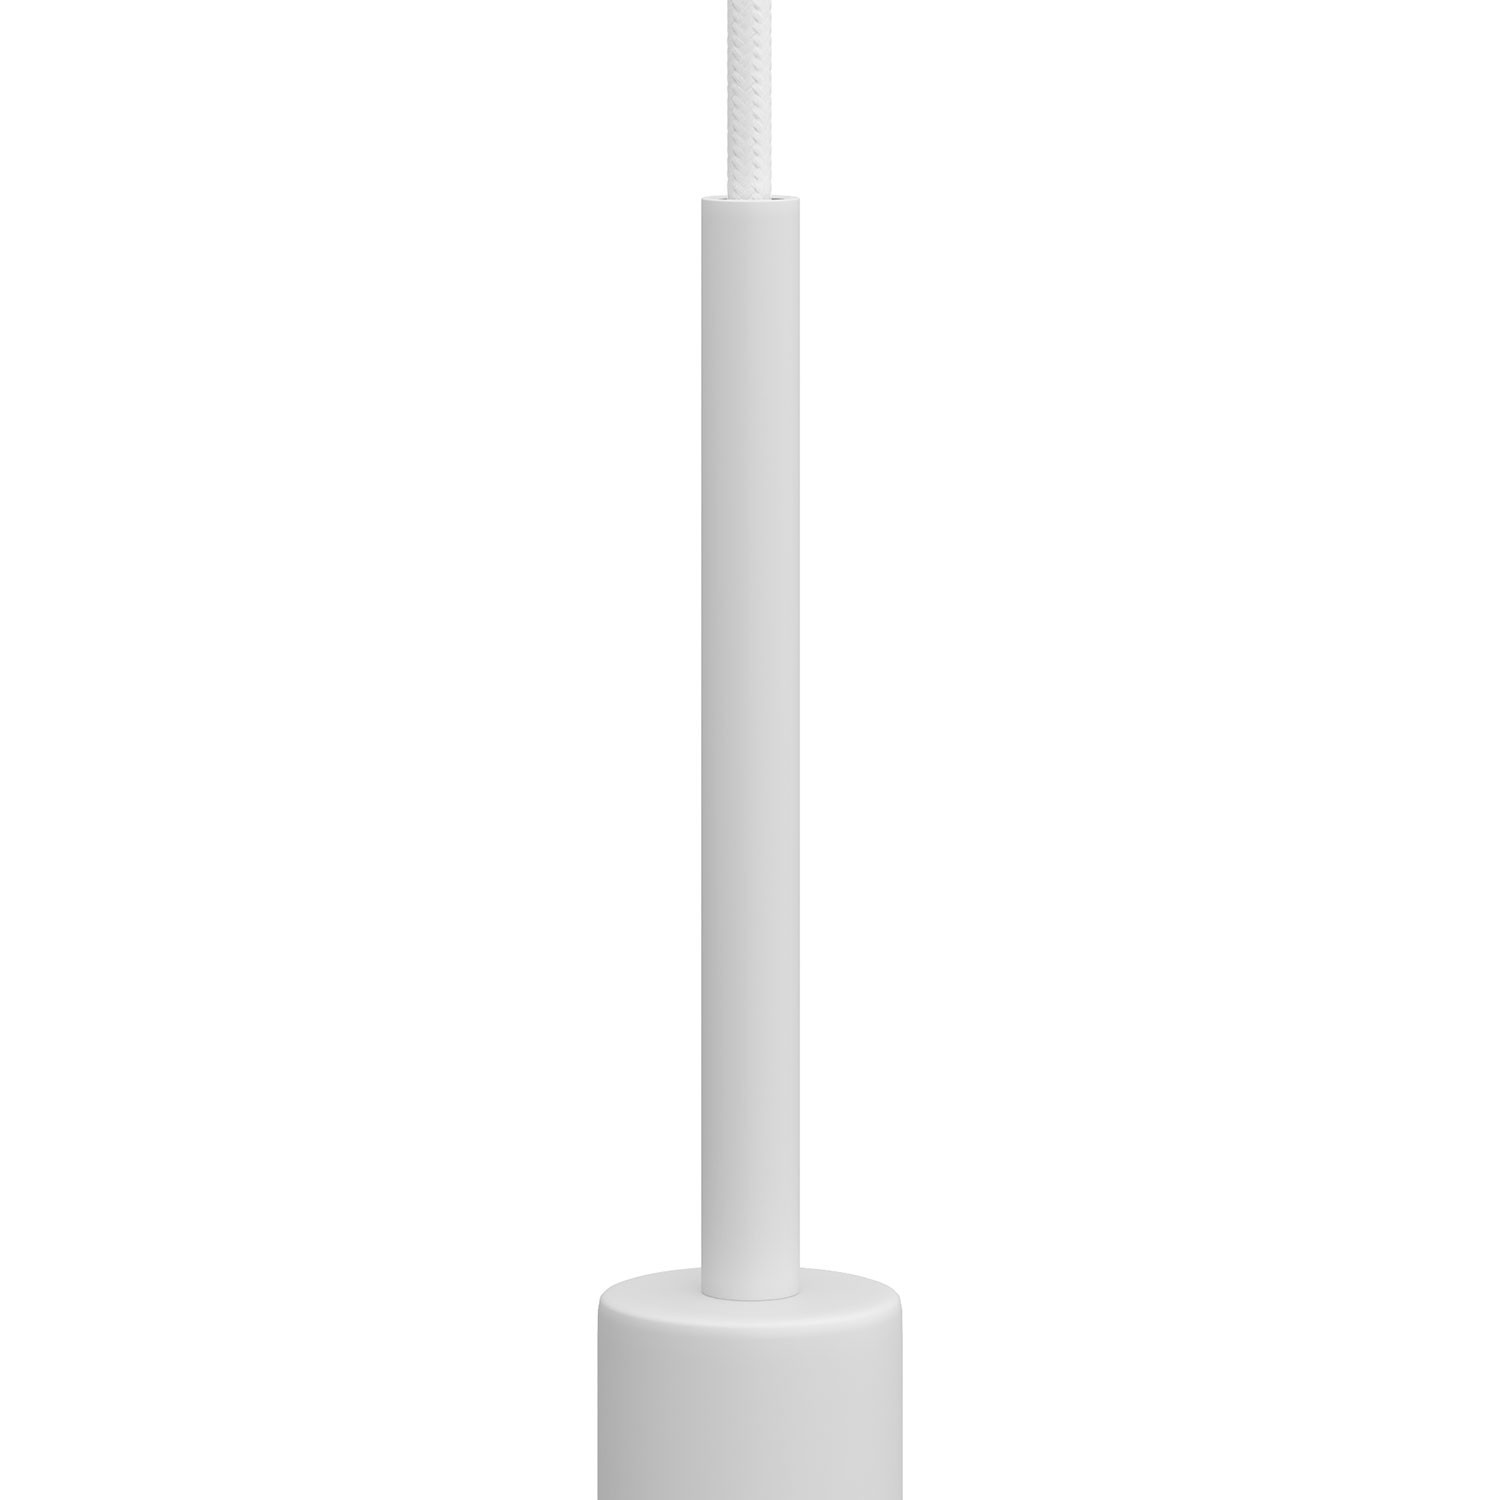 Cilindrična metalna obujmica za kabel, dužine 15 cm, u kompletu sa šipkom, maticom i podloškom